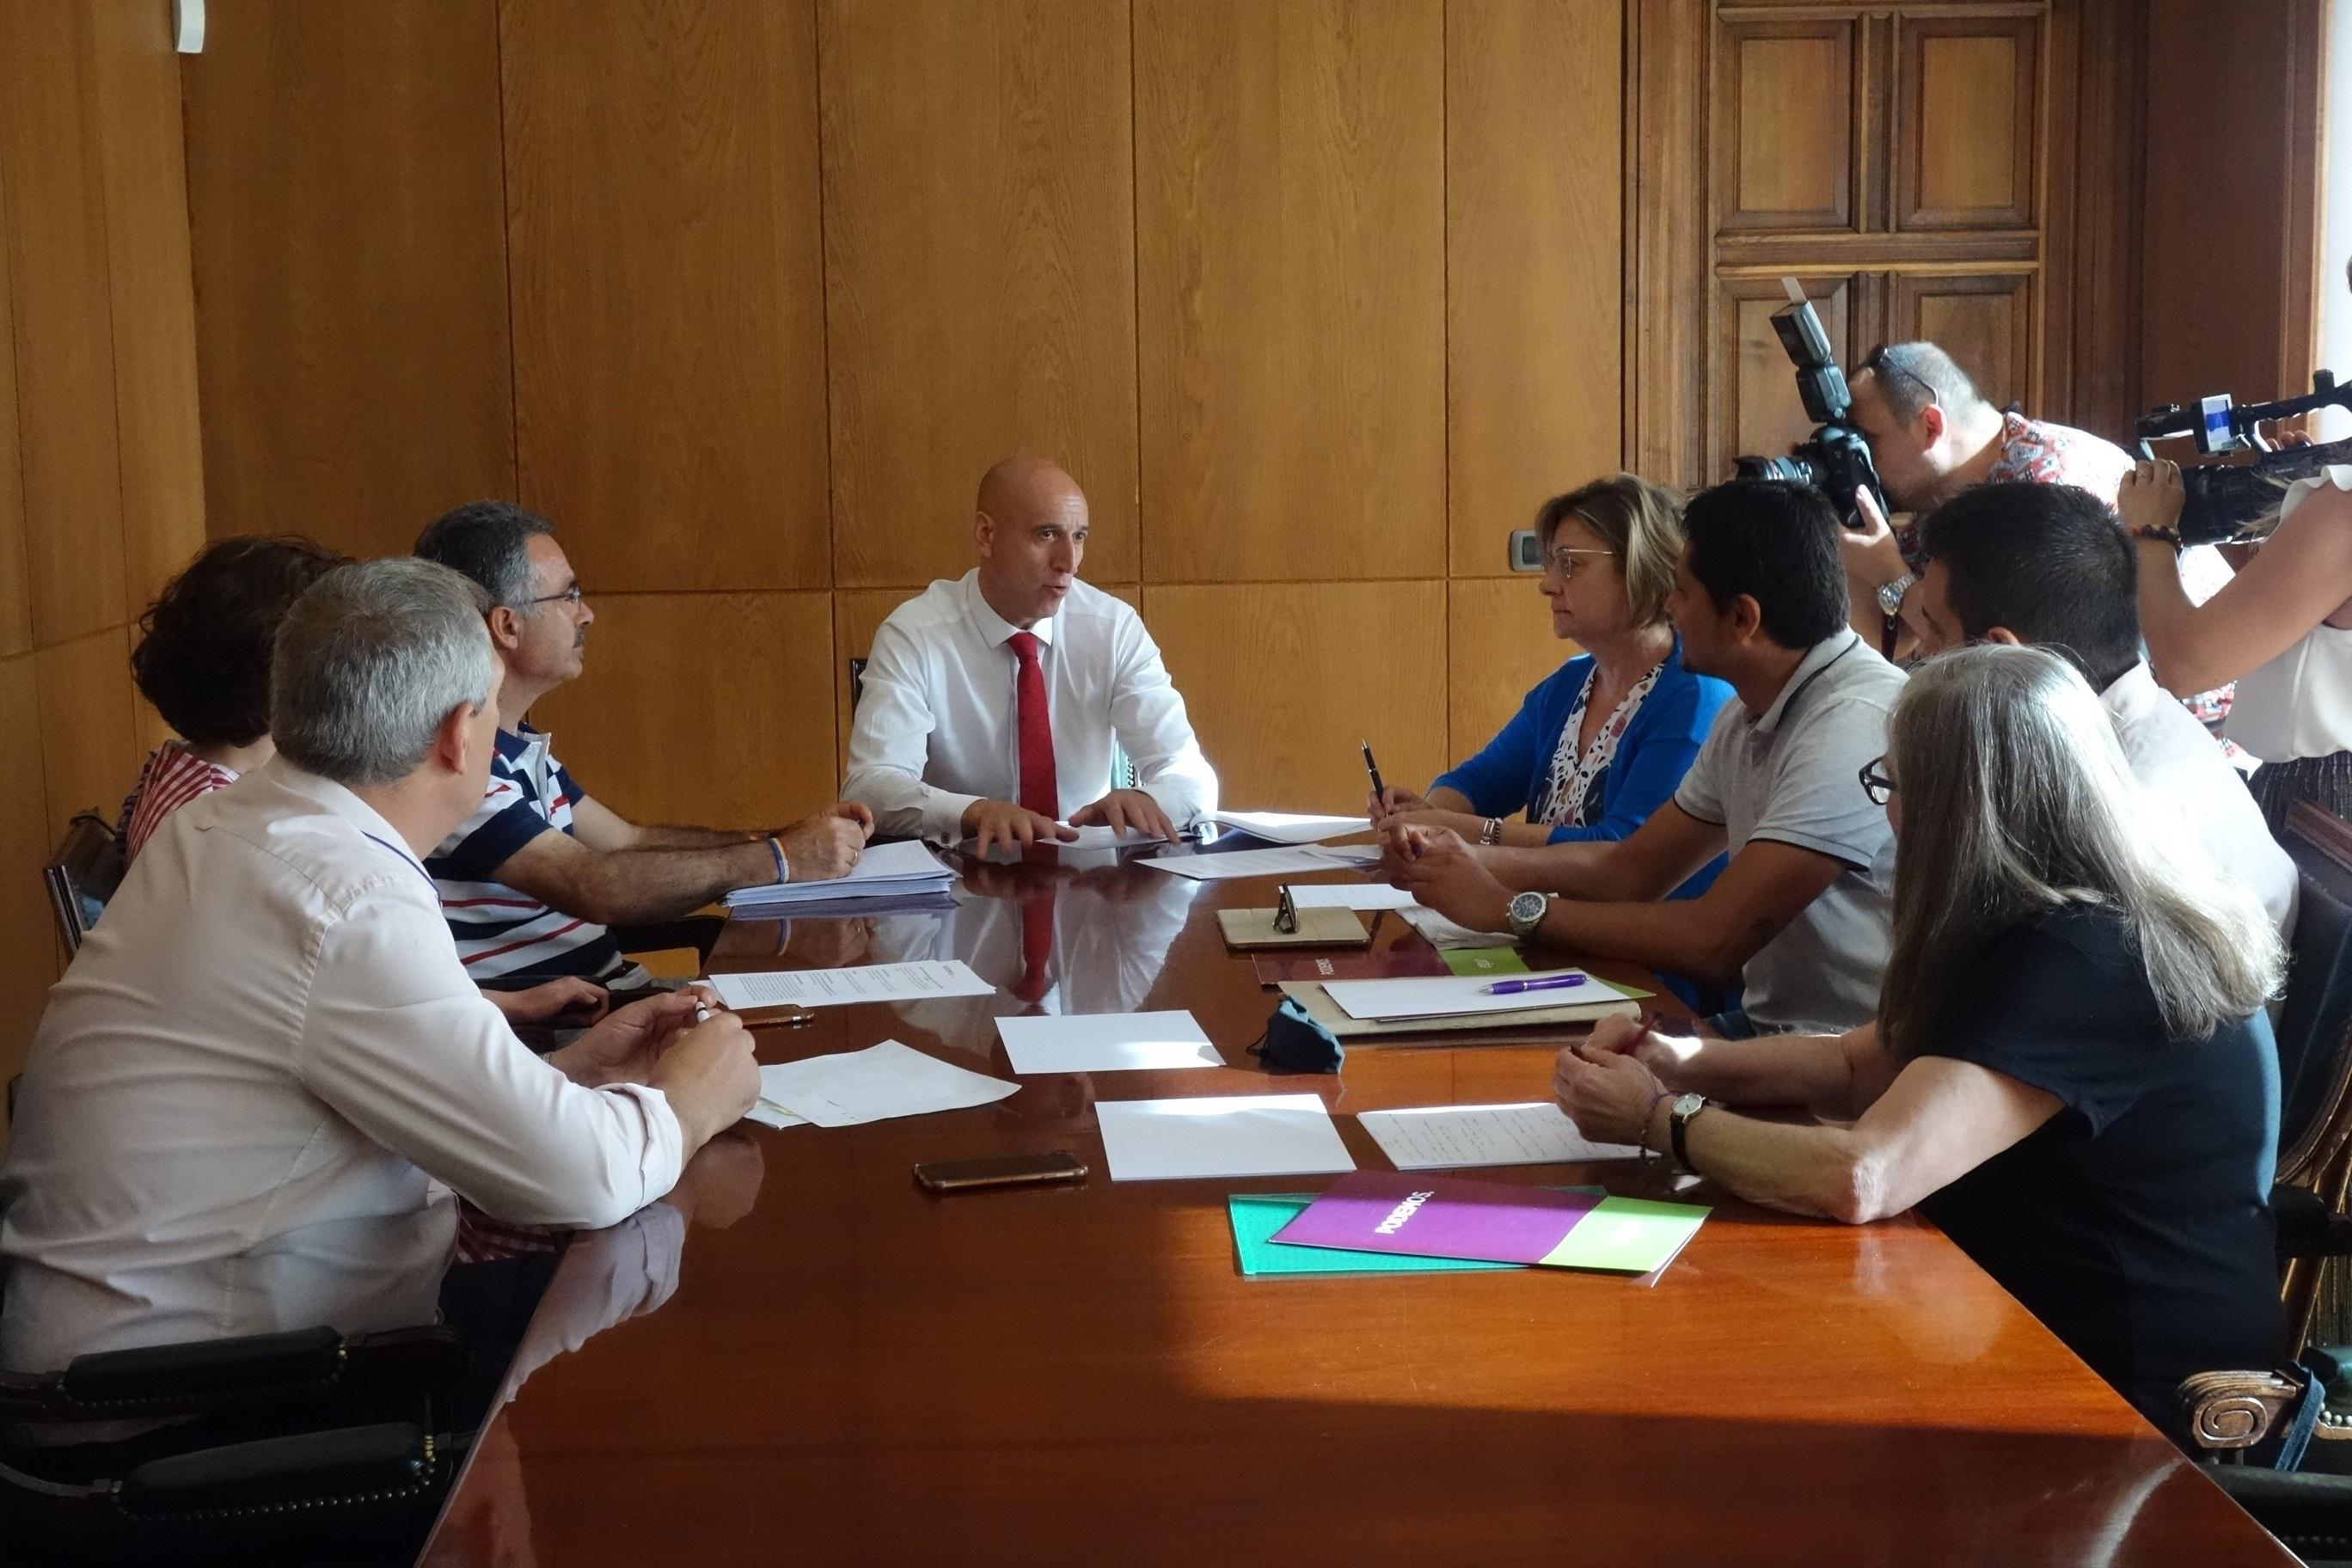 El alcalde de León José Antonio Diez y miembros de la corporación se reúnen con representantes de Podemos Equo y su concejal en el Consistorio Nicanor Pastrana. EP